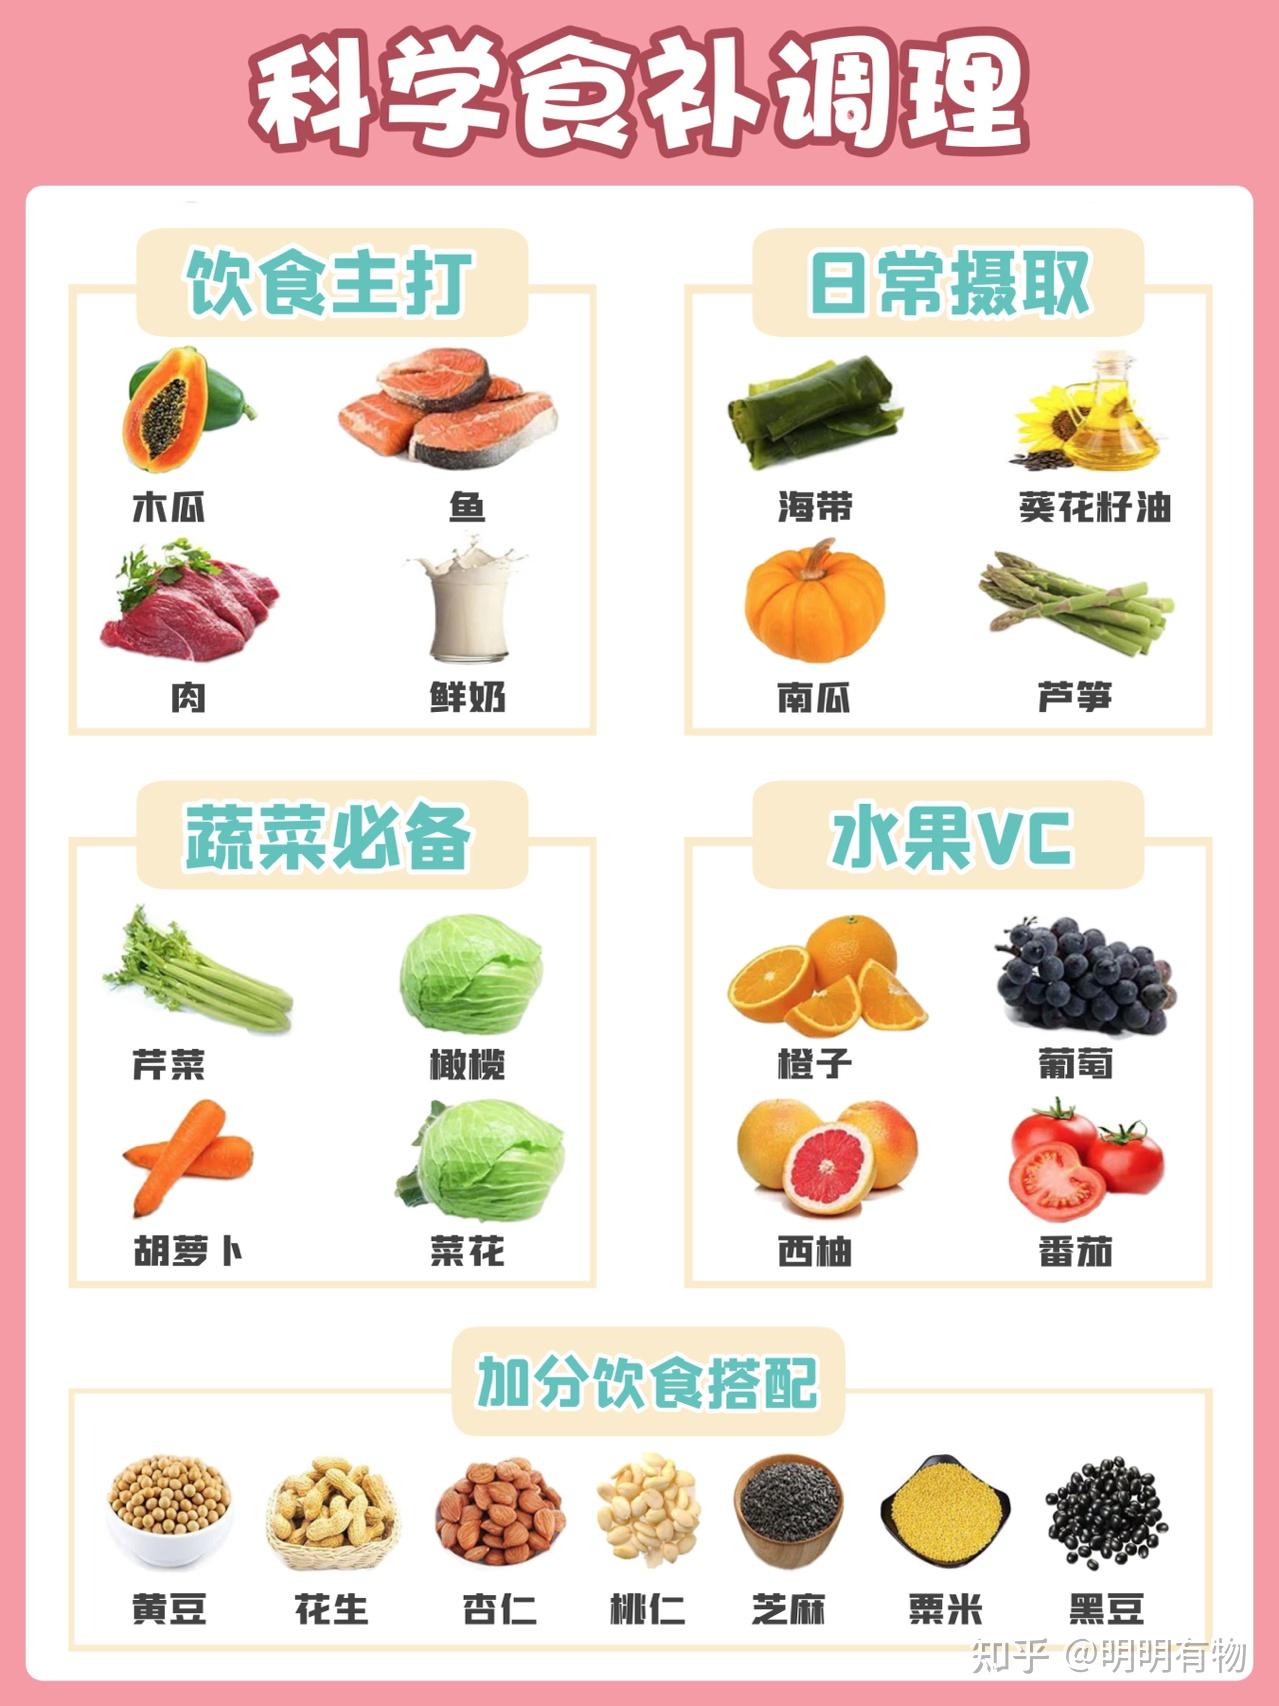 多吃蛋白质含量高的食物:木瓜,鱼,鲜奶多吃坚果类:花生,杏仁vc:橙子